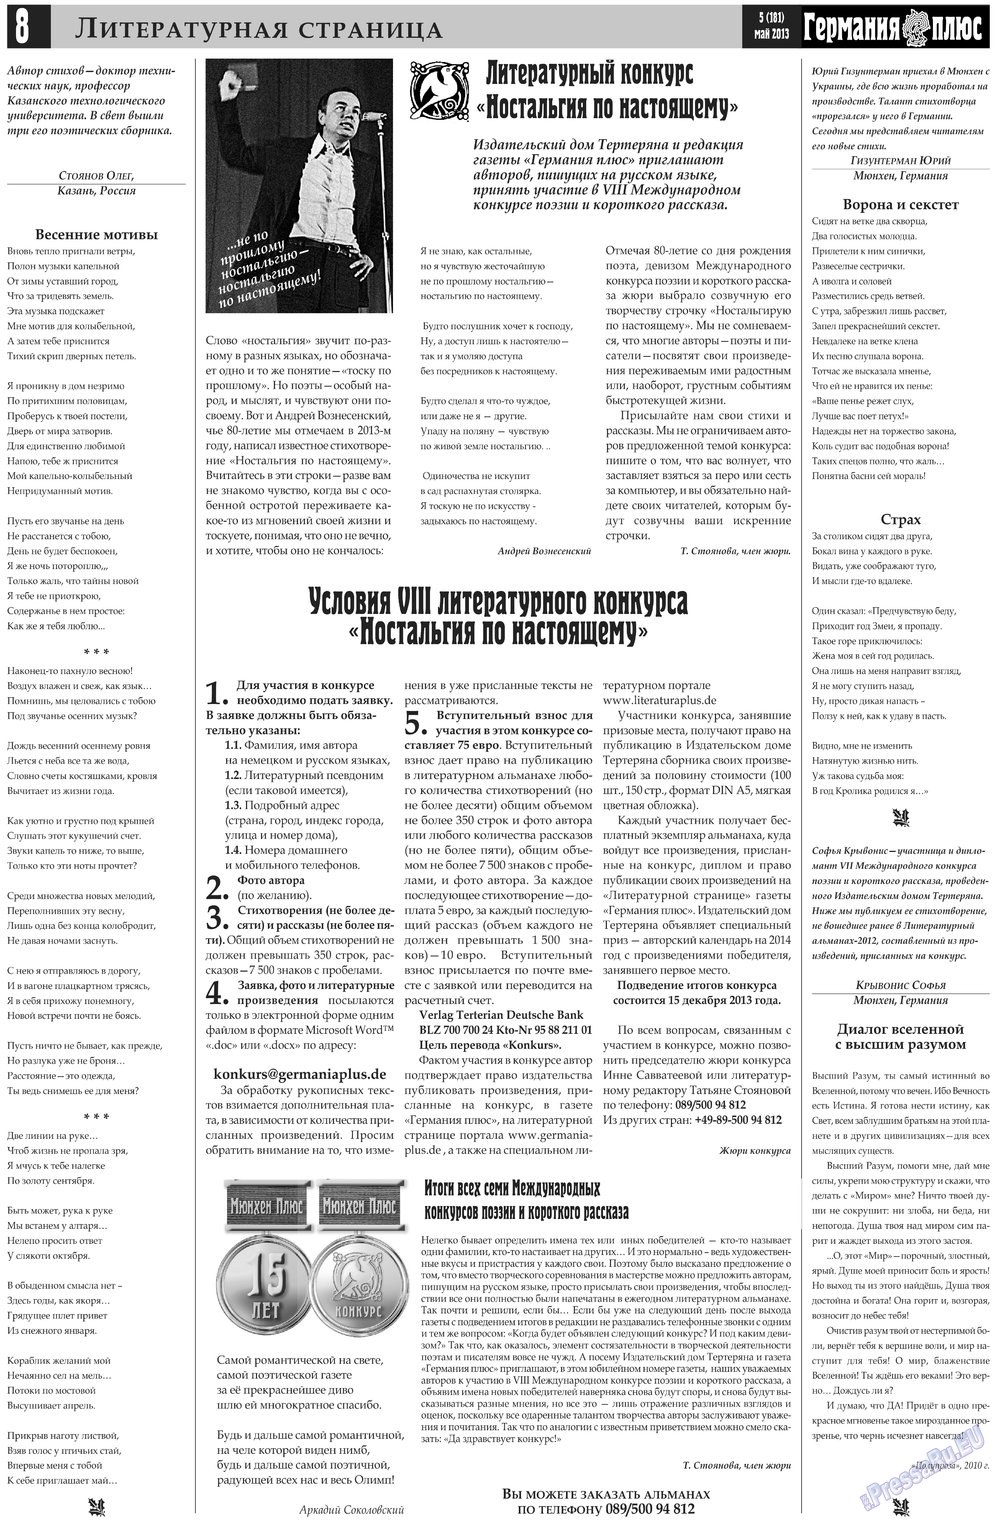 Германия плюс (газета). 2013 год, номер 5, стр. 8